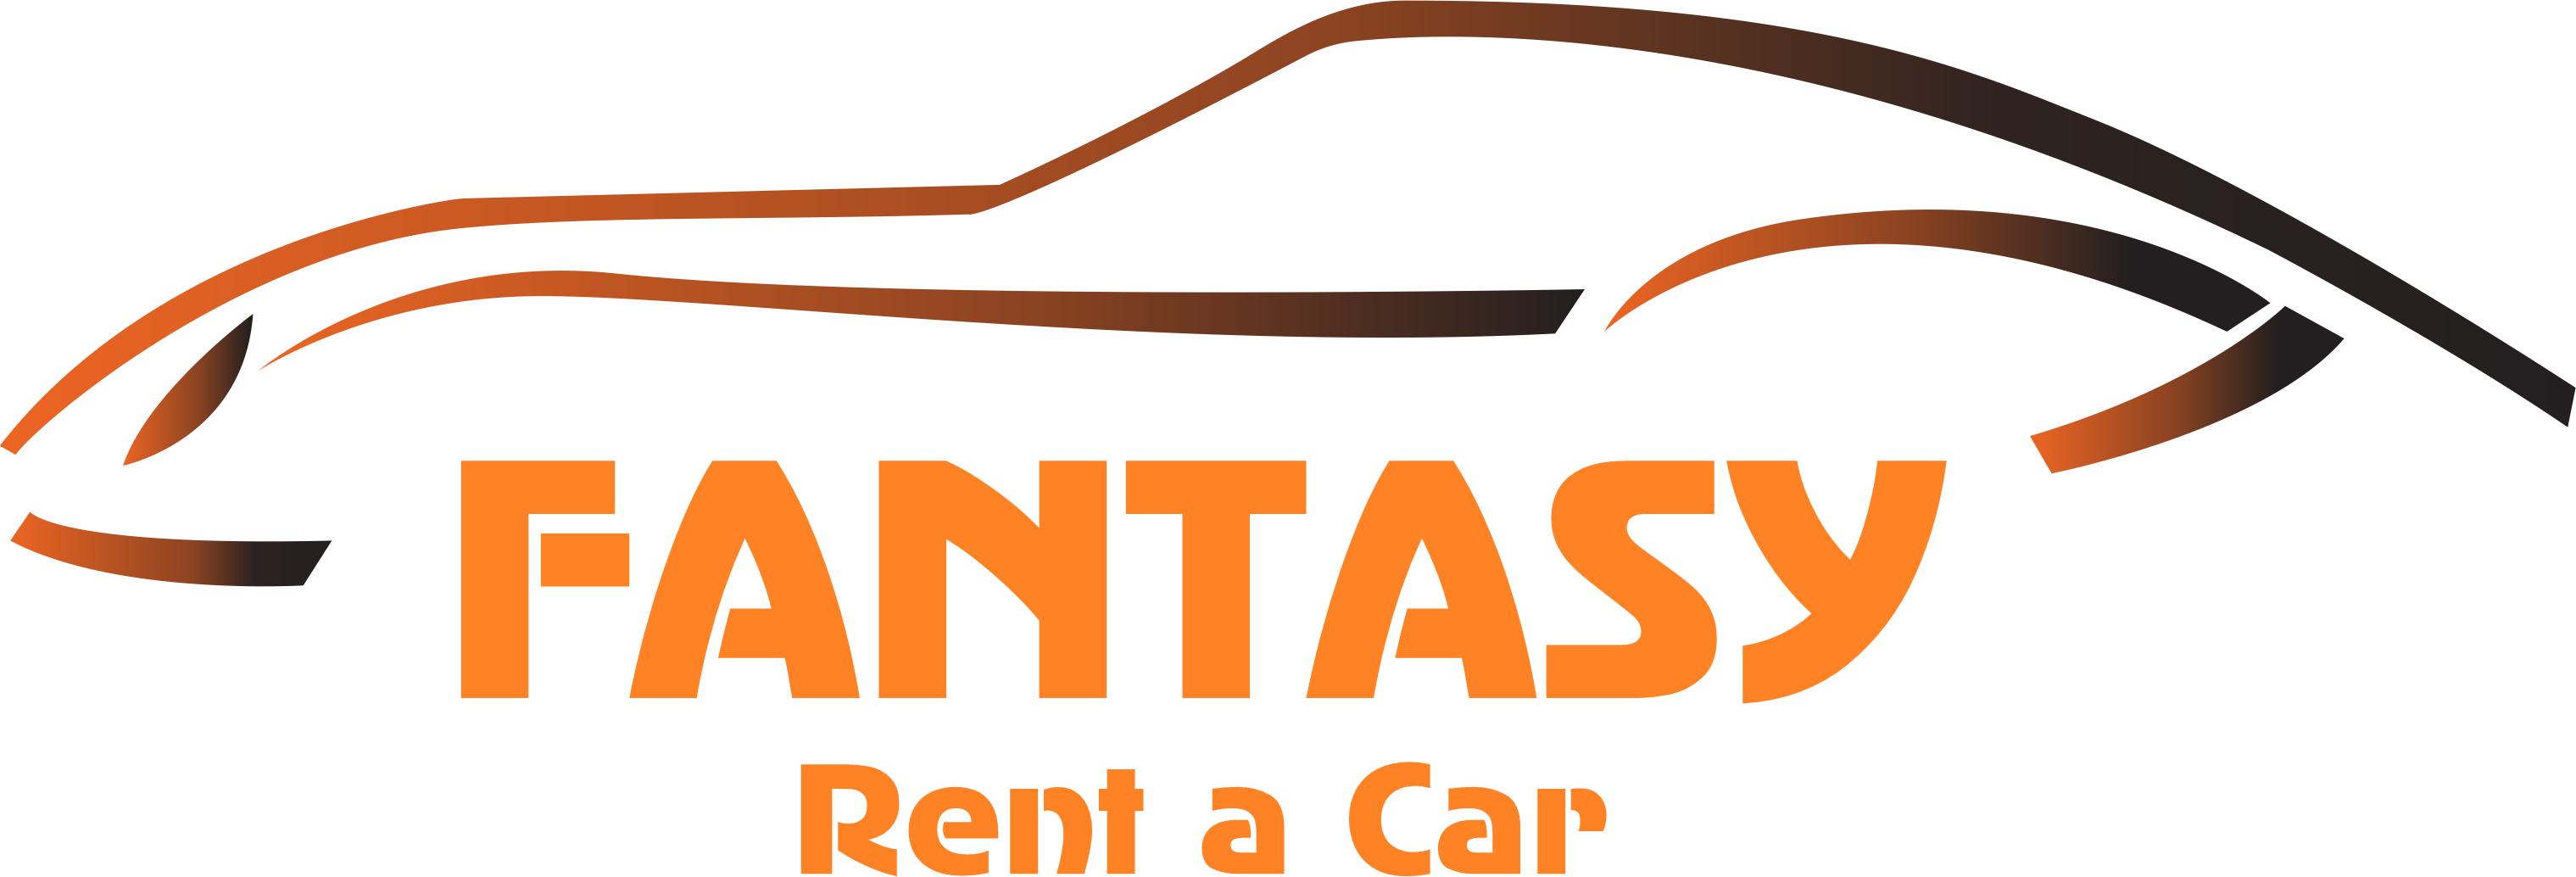 fantasy rent a car logo PNG